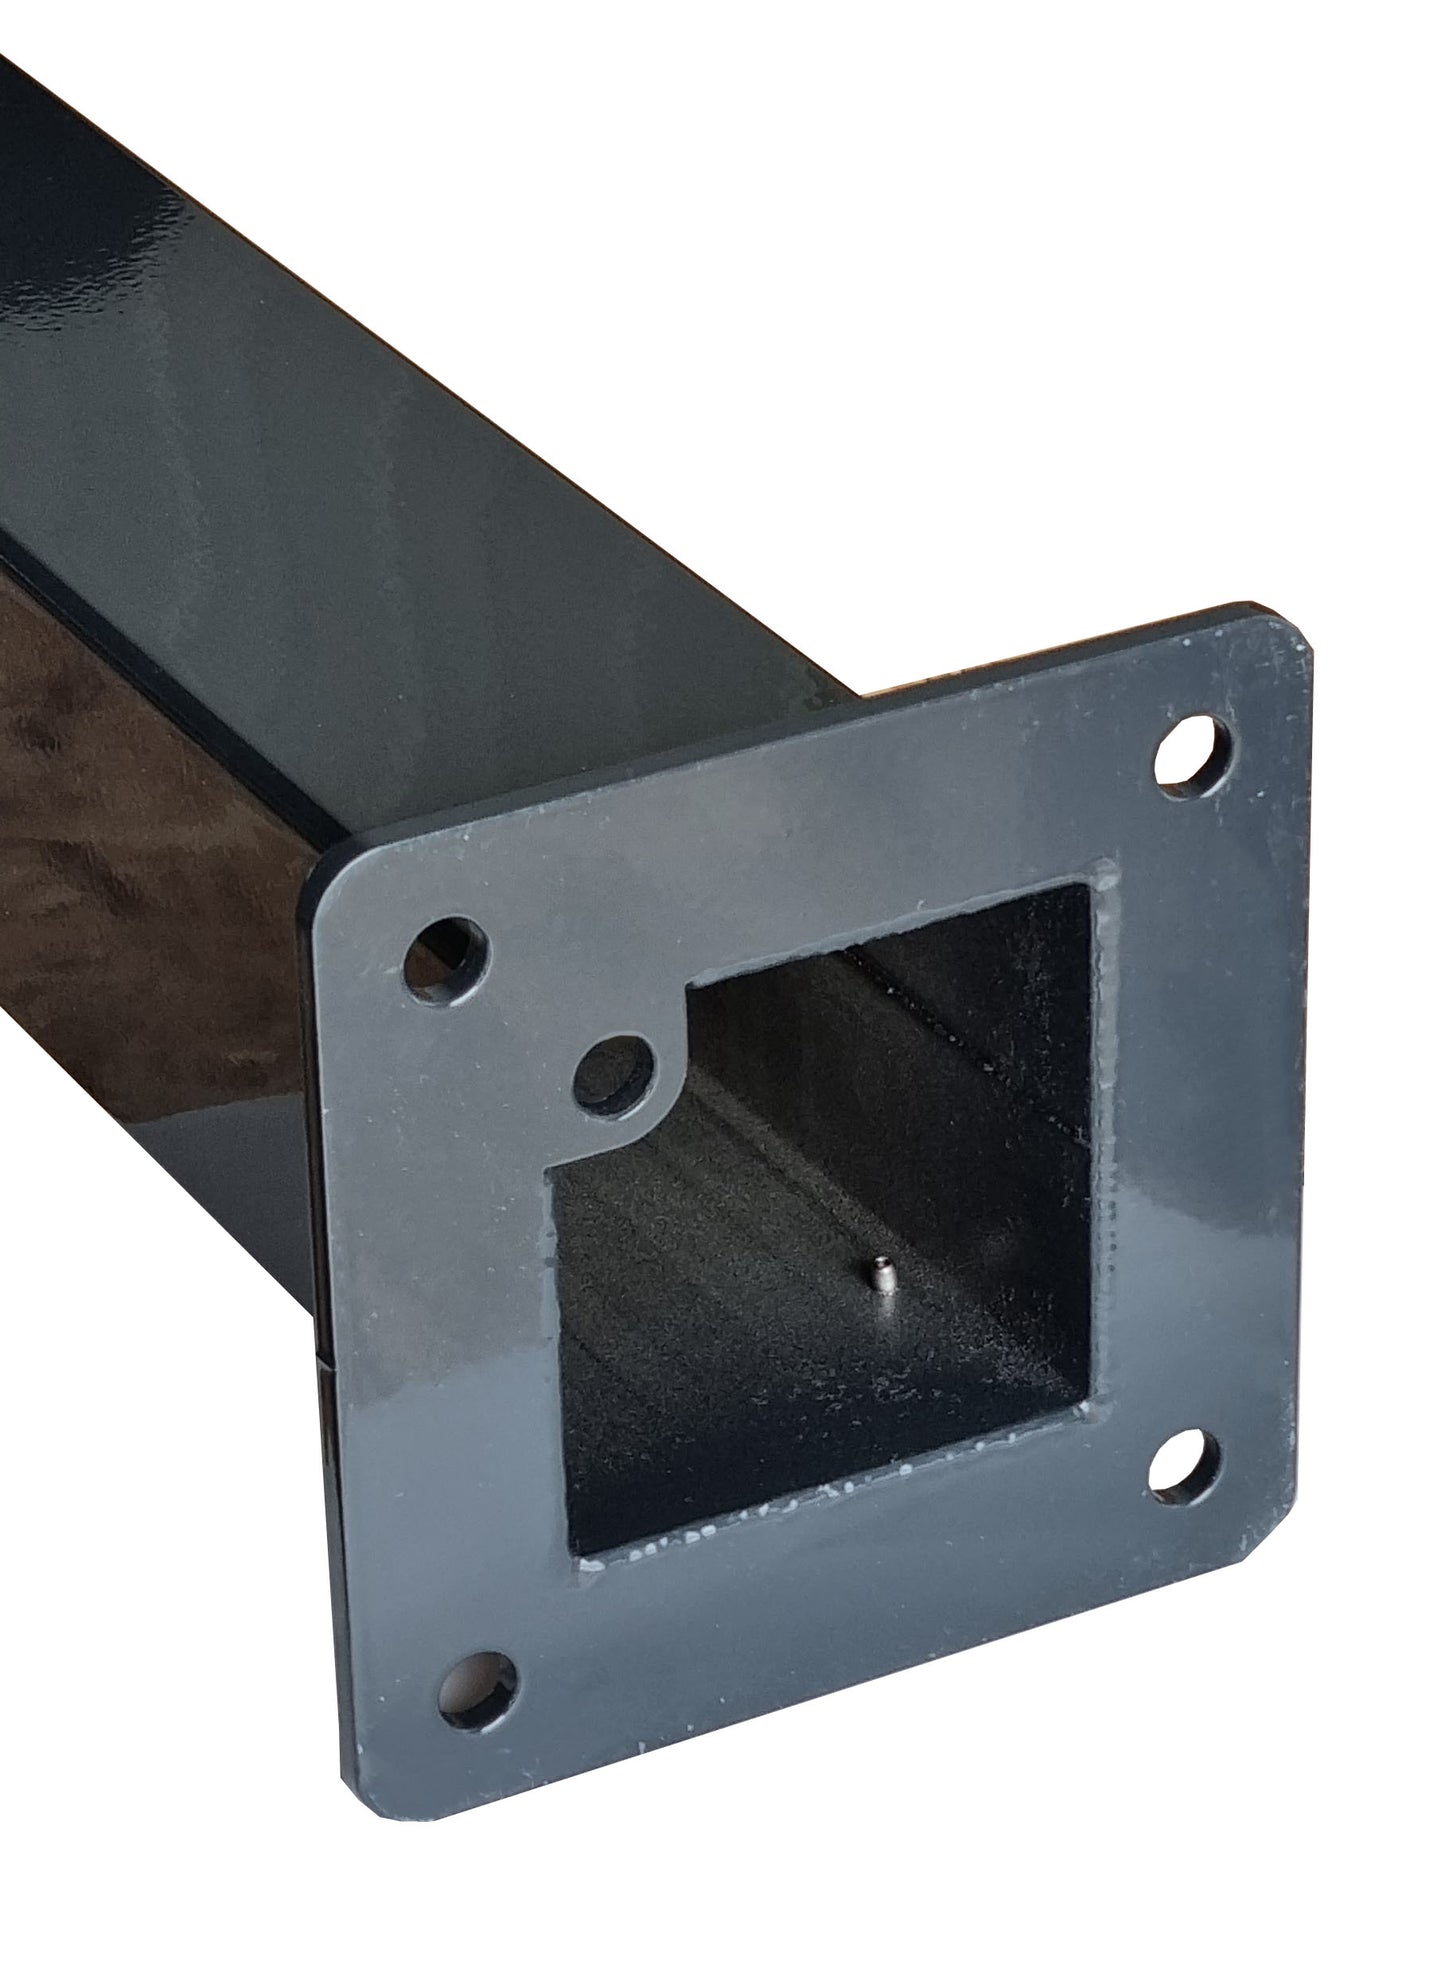 Laadpaal geschikt voor LIDL & Ultimate Speed Wallbox met dak en kabelhaak | Voet | Statief | Base